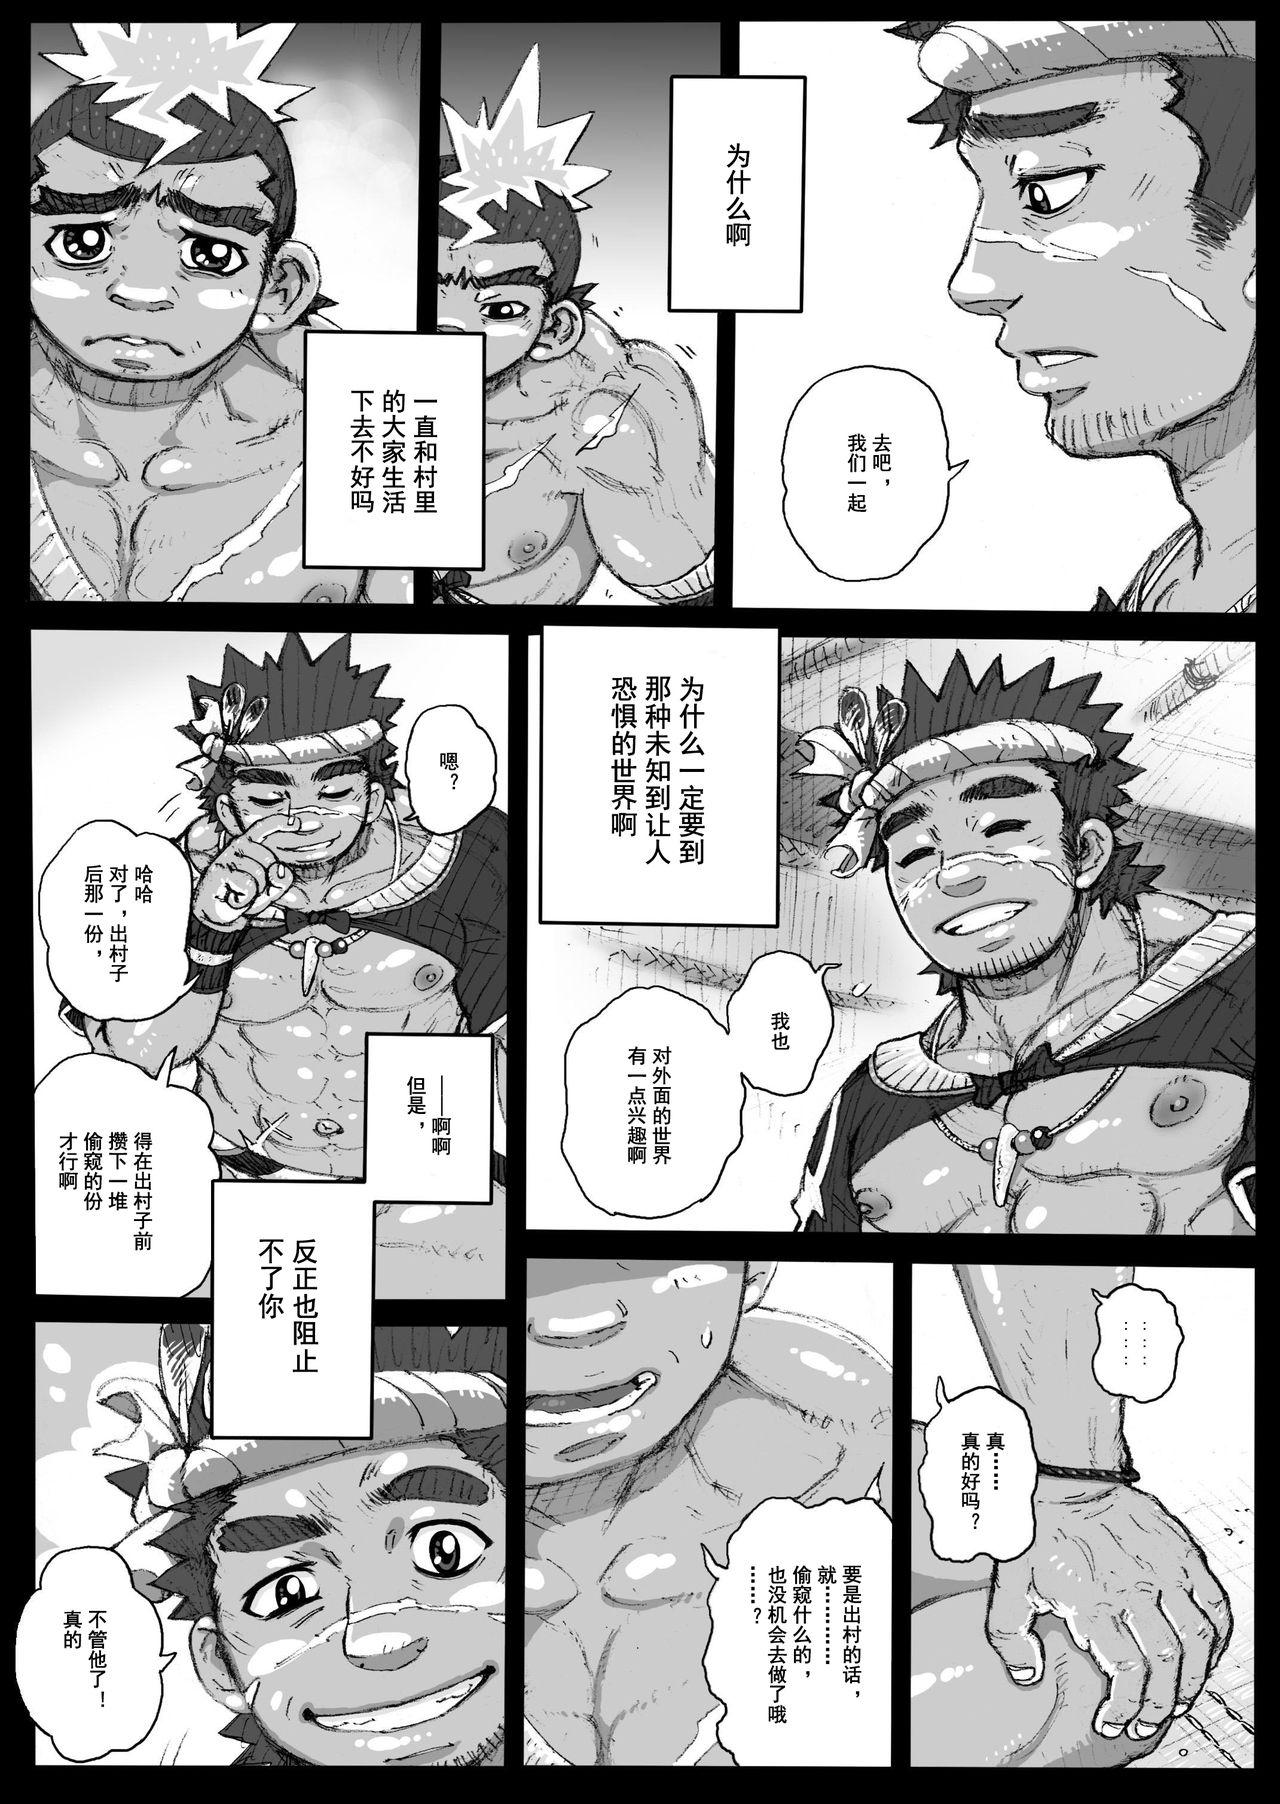 Amateur Hepoe no Kuni kara 2 - Daiji na Ketsui to Dainashi no Funiki no Maki Gostosa - Page 9